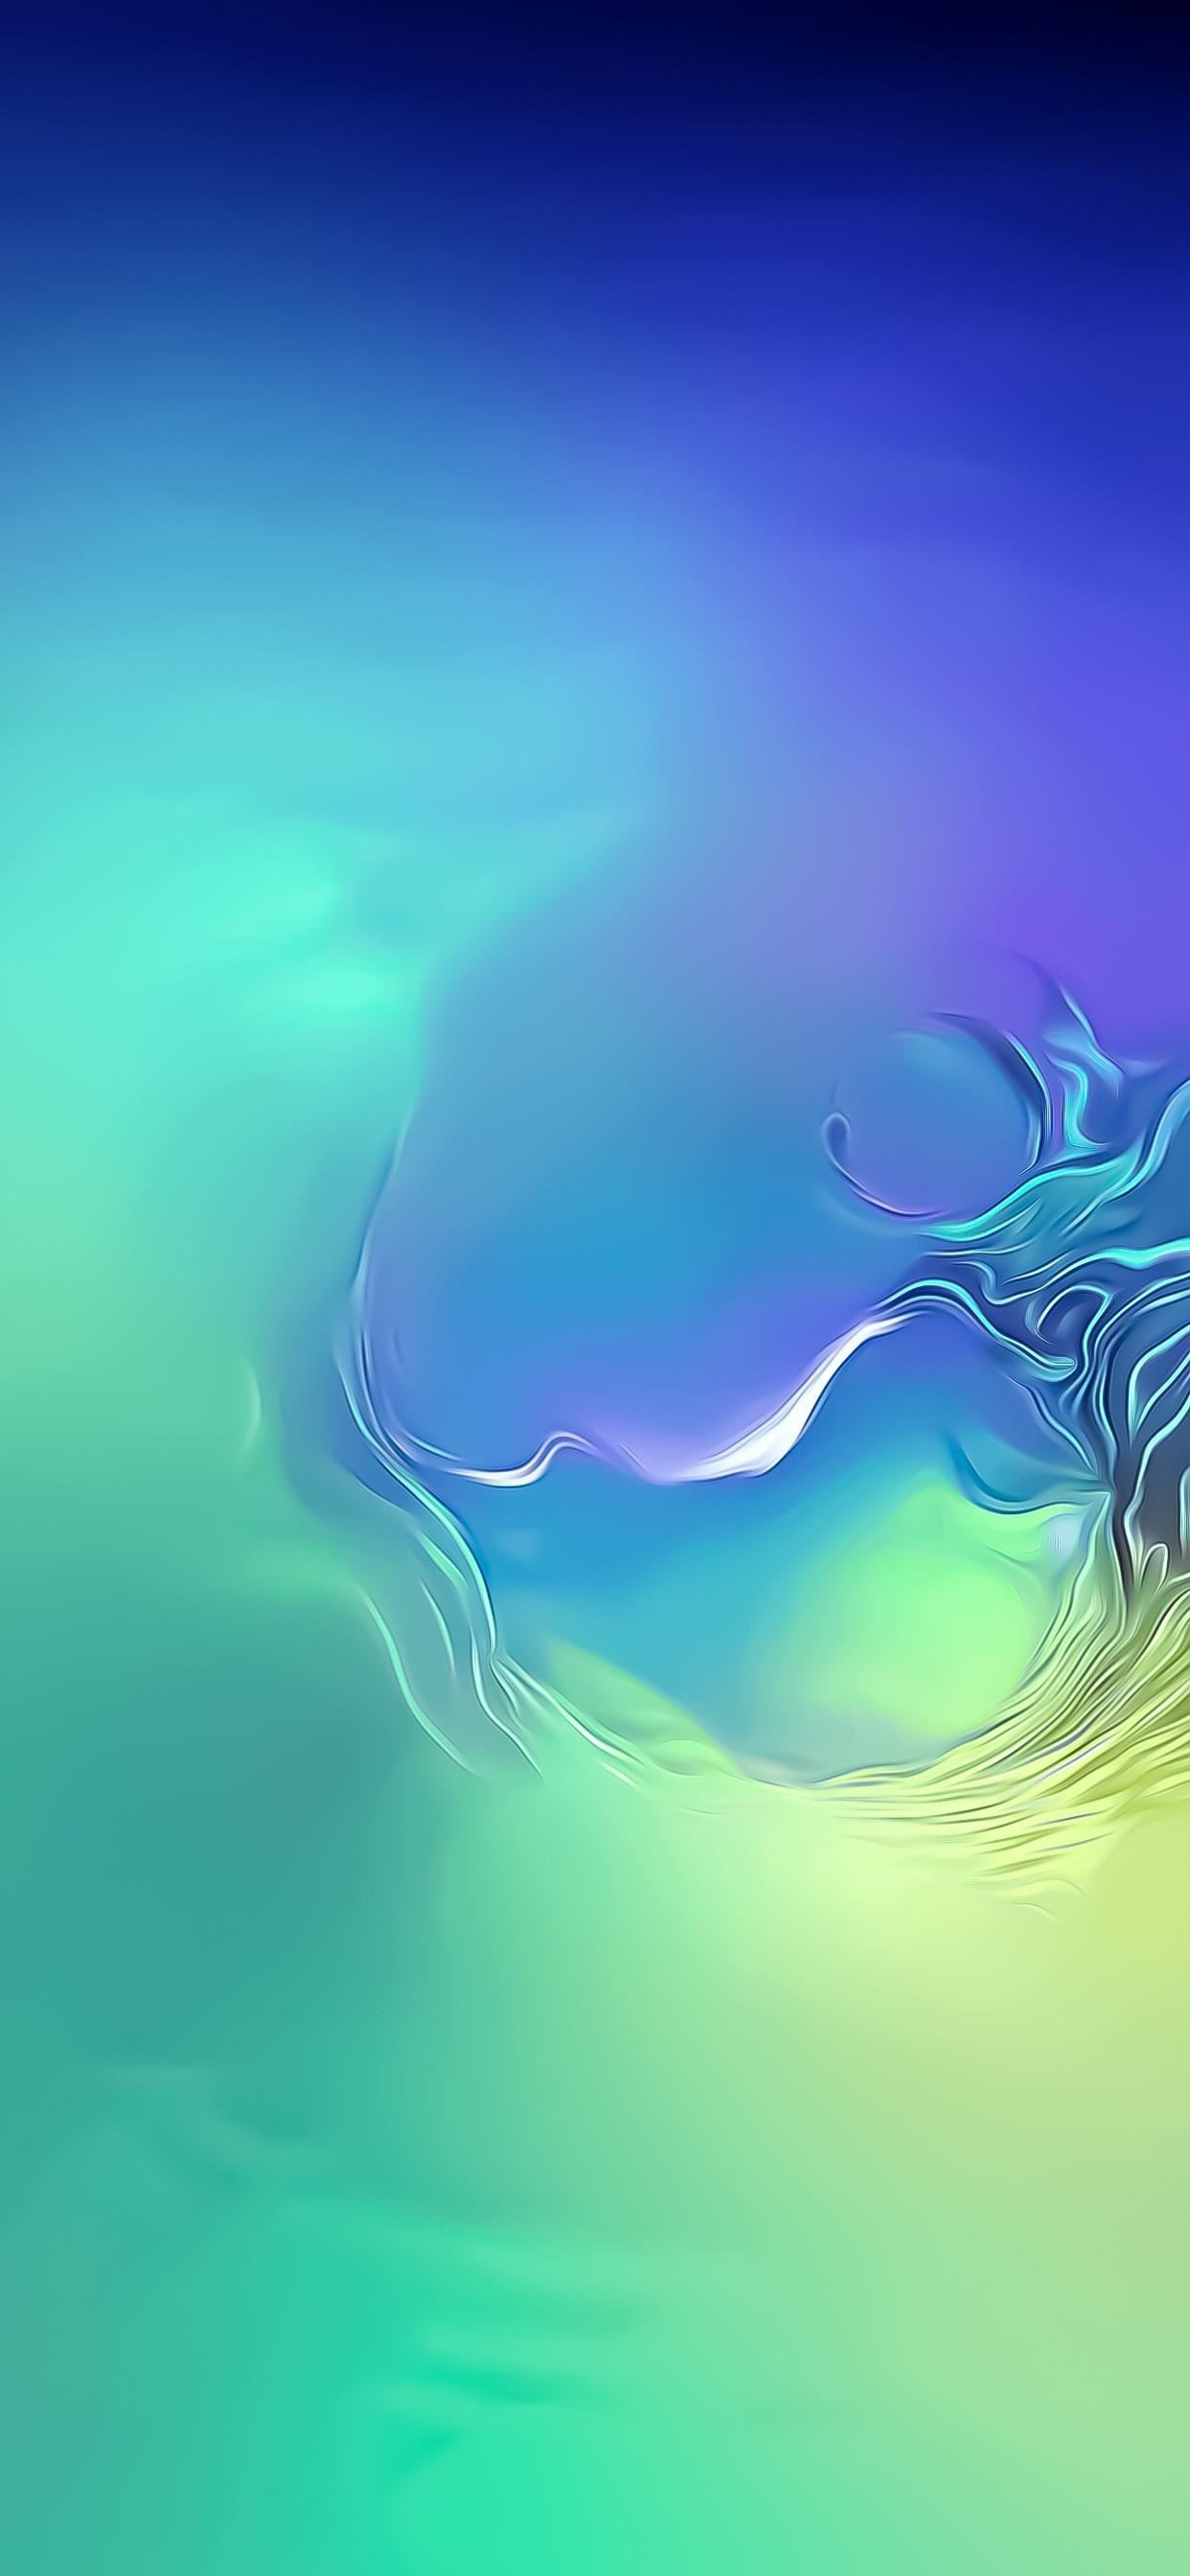 삼성 벽지,푸른,하늘,물,아쿠아,삽화